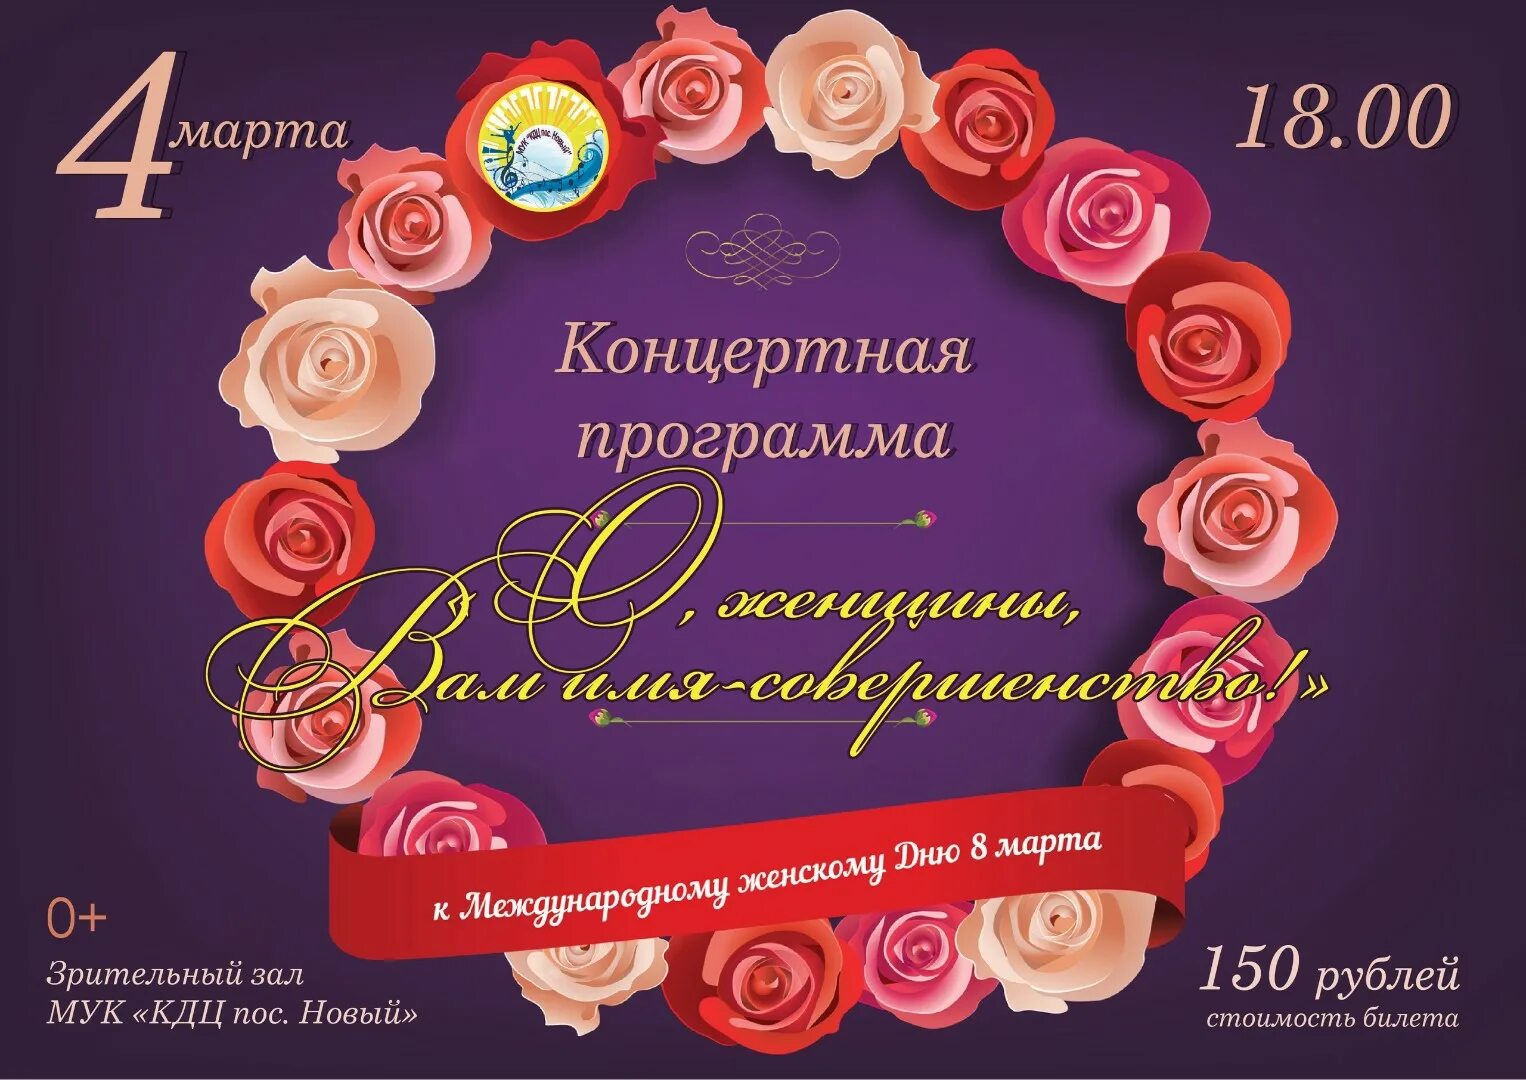 Праздничный концерт к Международному женскому Дню.